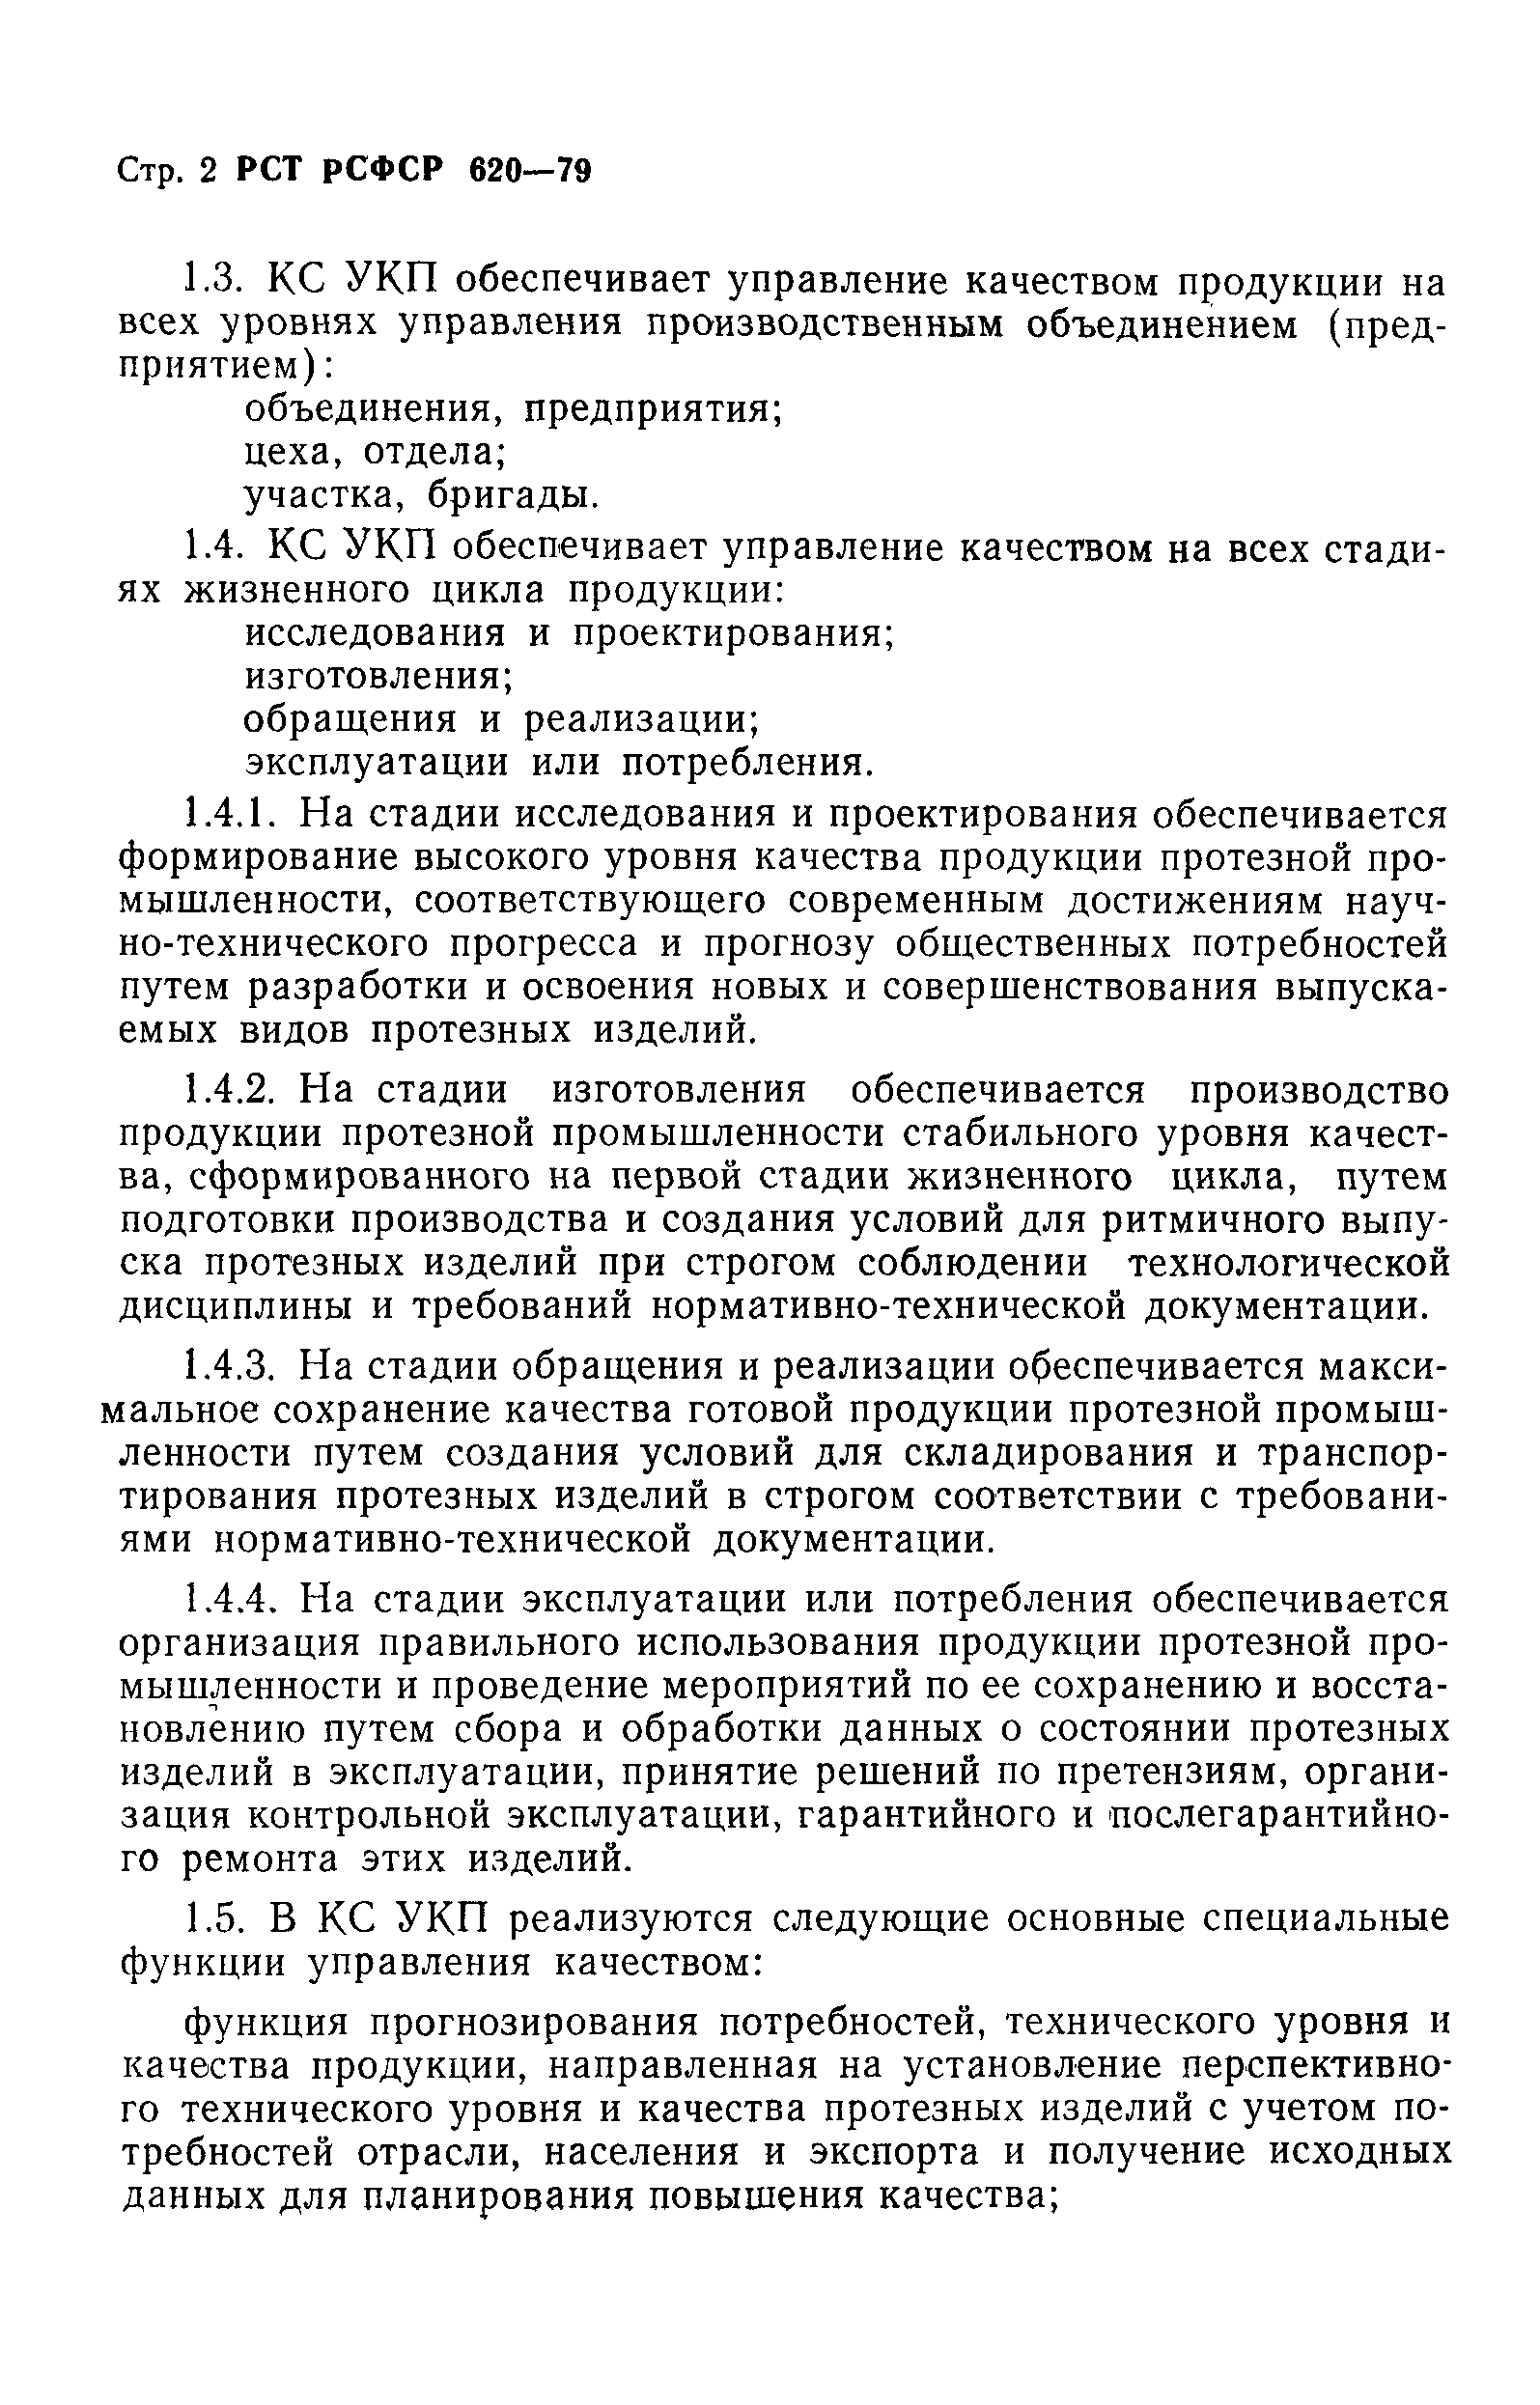 РСТ РСФСР 620-79